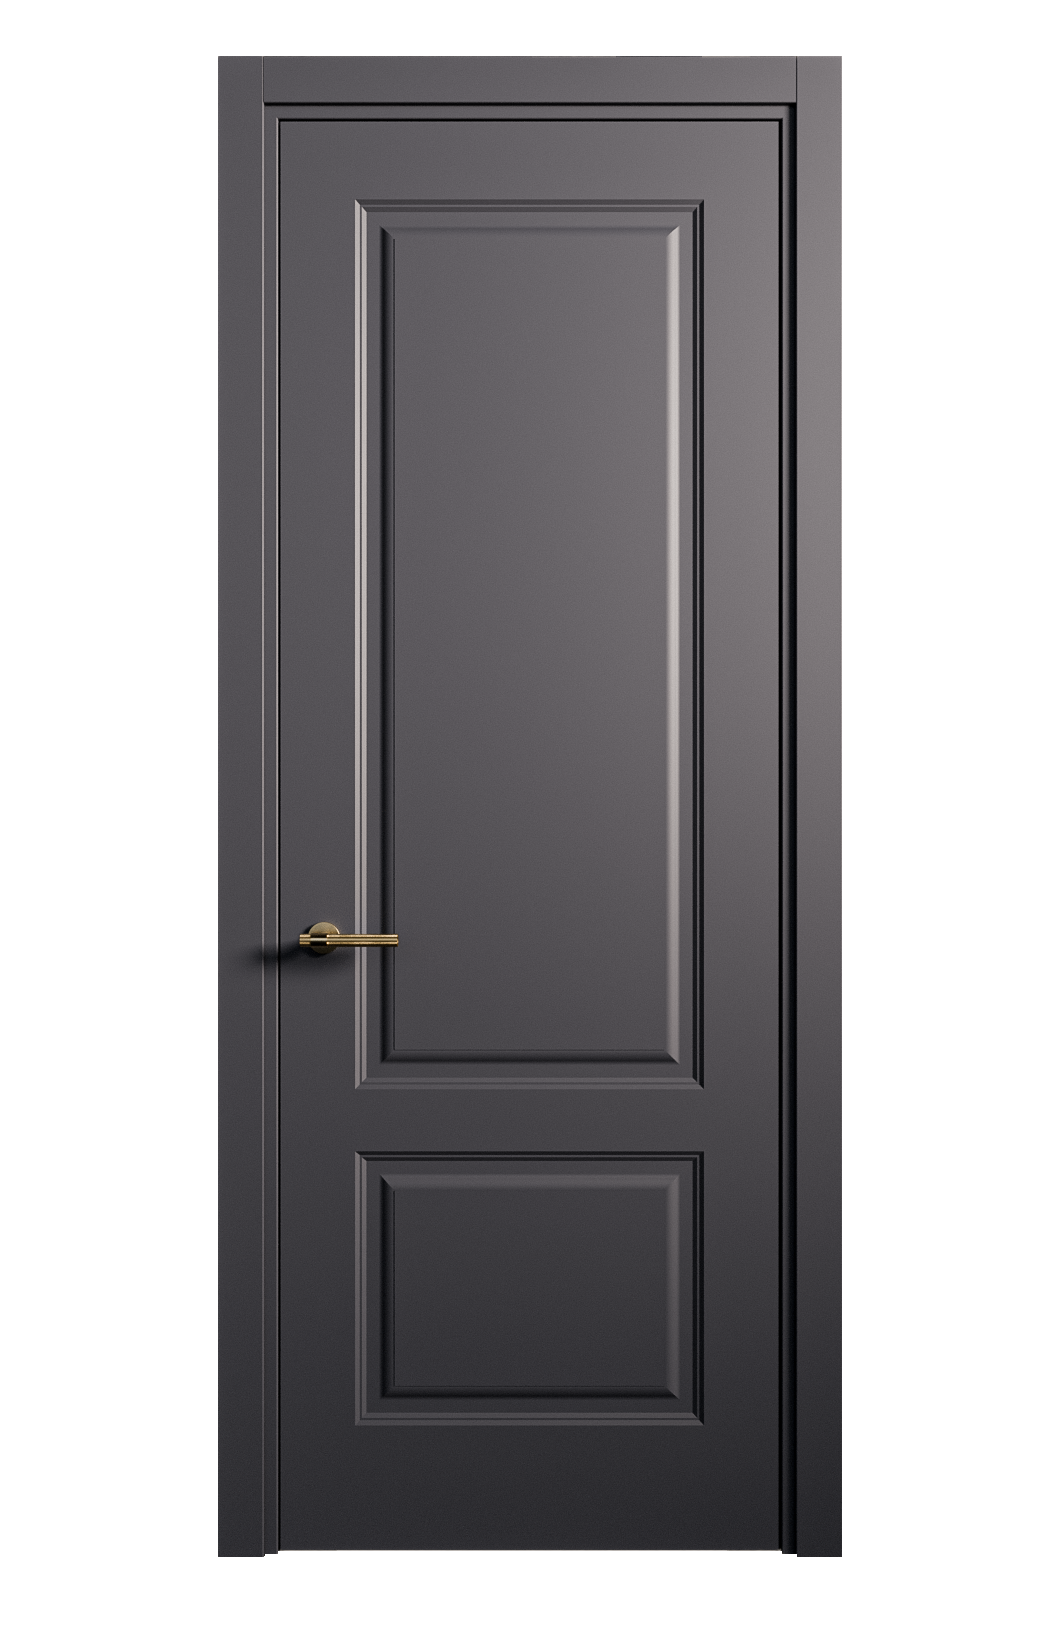 Межкомнатная дверь Вита-1 глухая эмаль ral 7024 26240